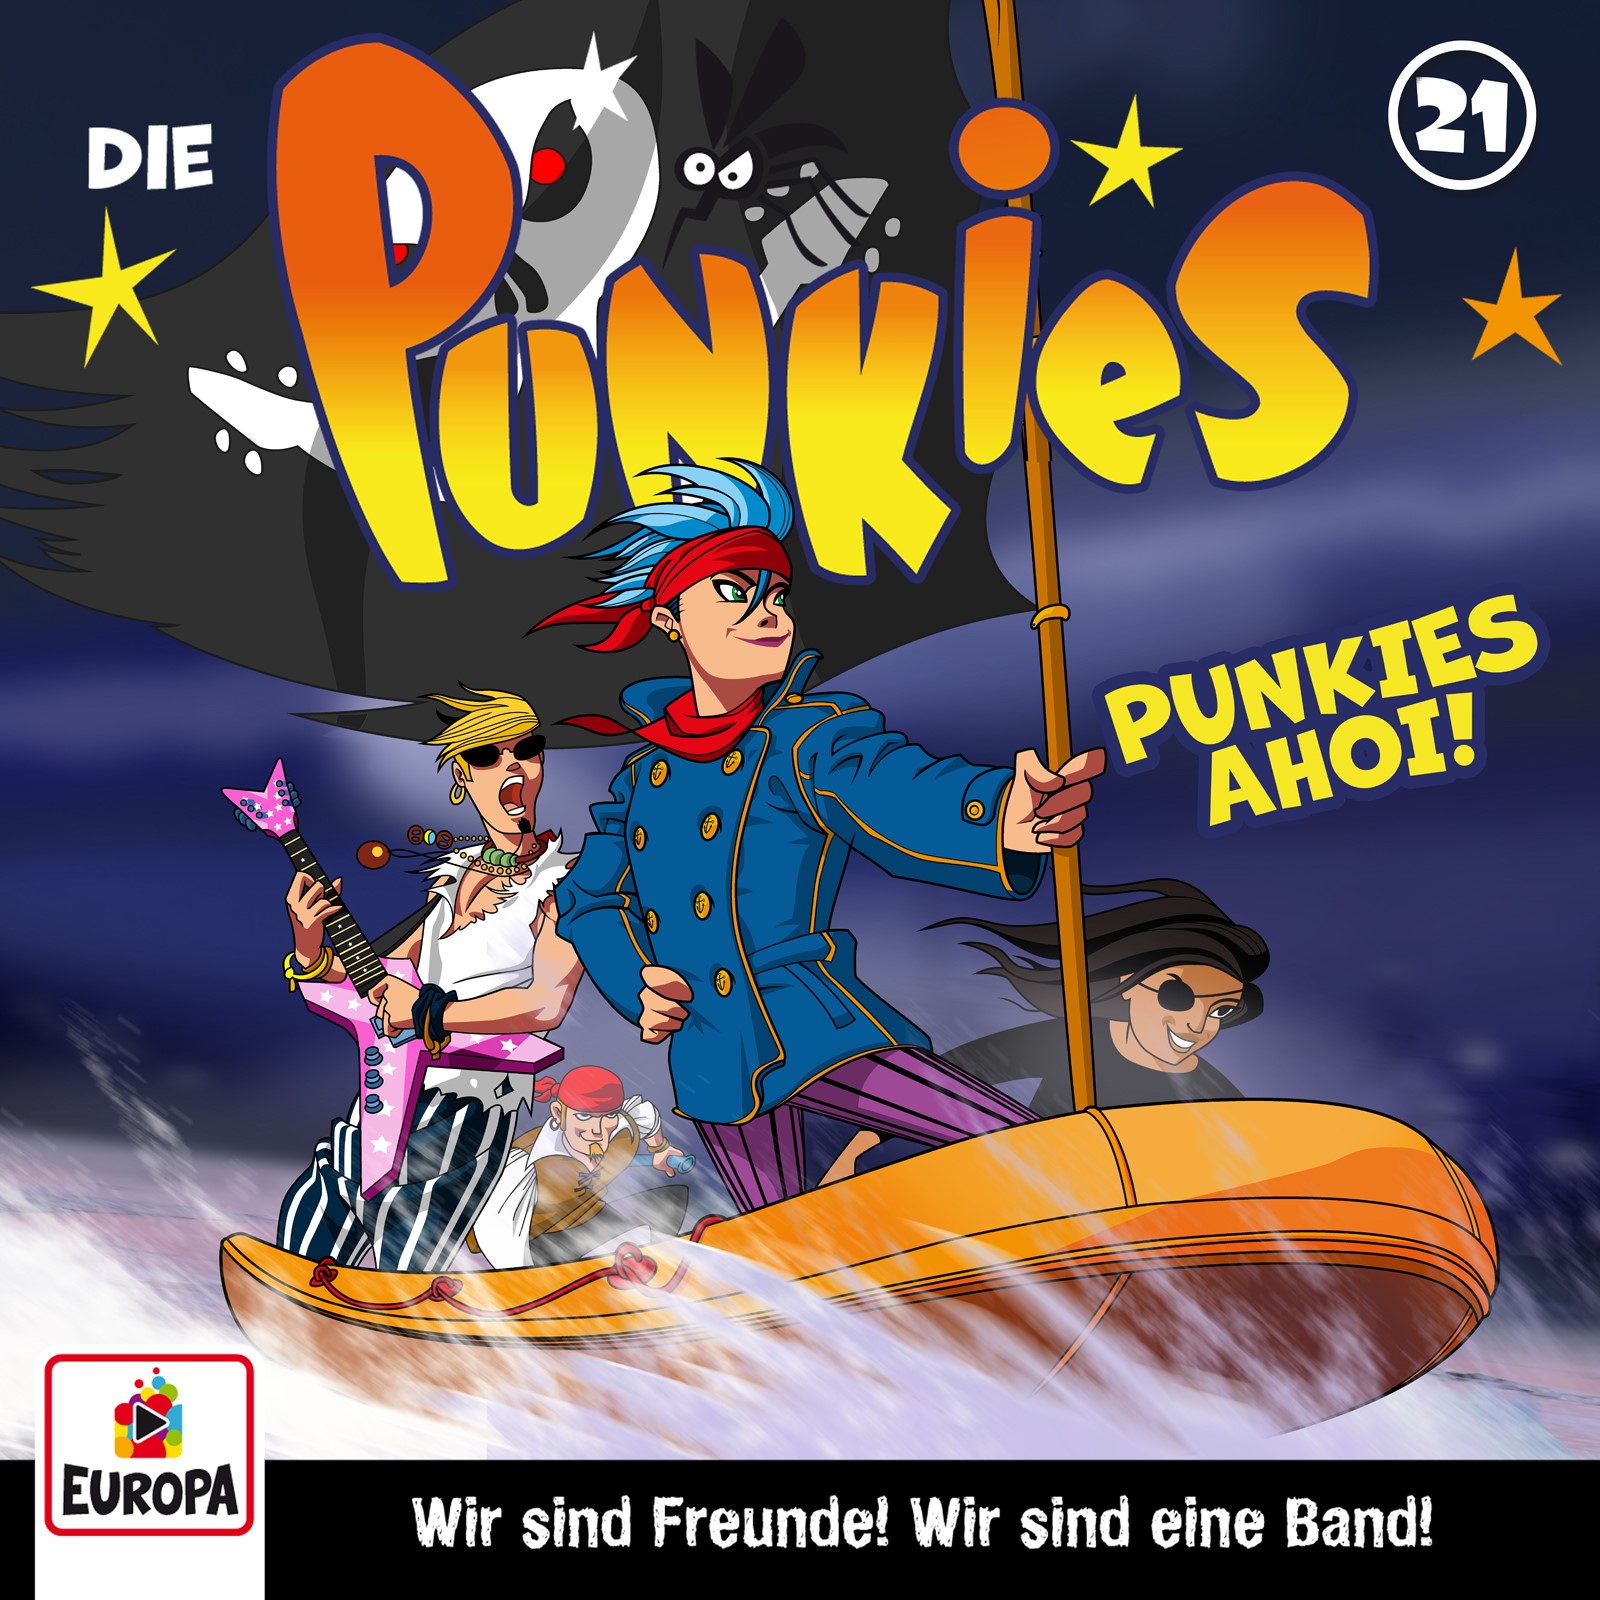 Die Punkies : Punkies Ahoi!